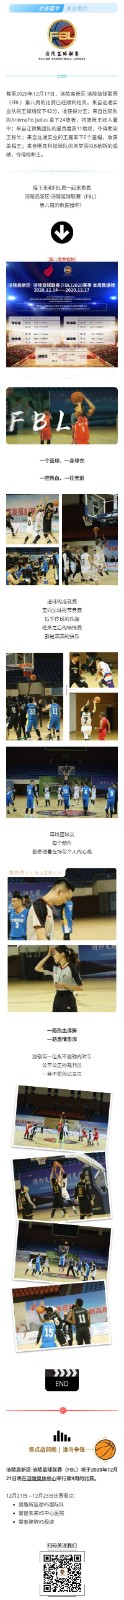 涪陵高新区·涪陵篮球联赛（FBL）2020赛季周报（12.14-12.17）